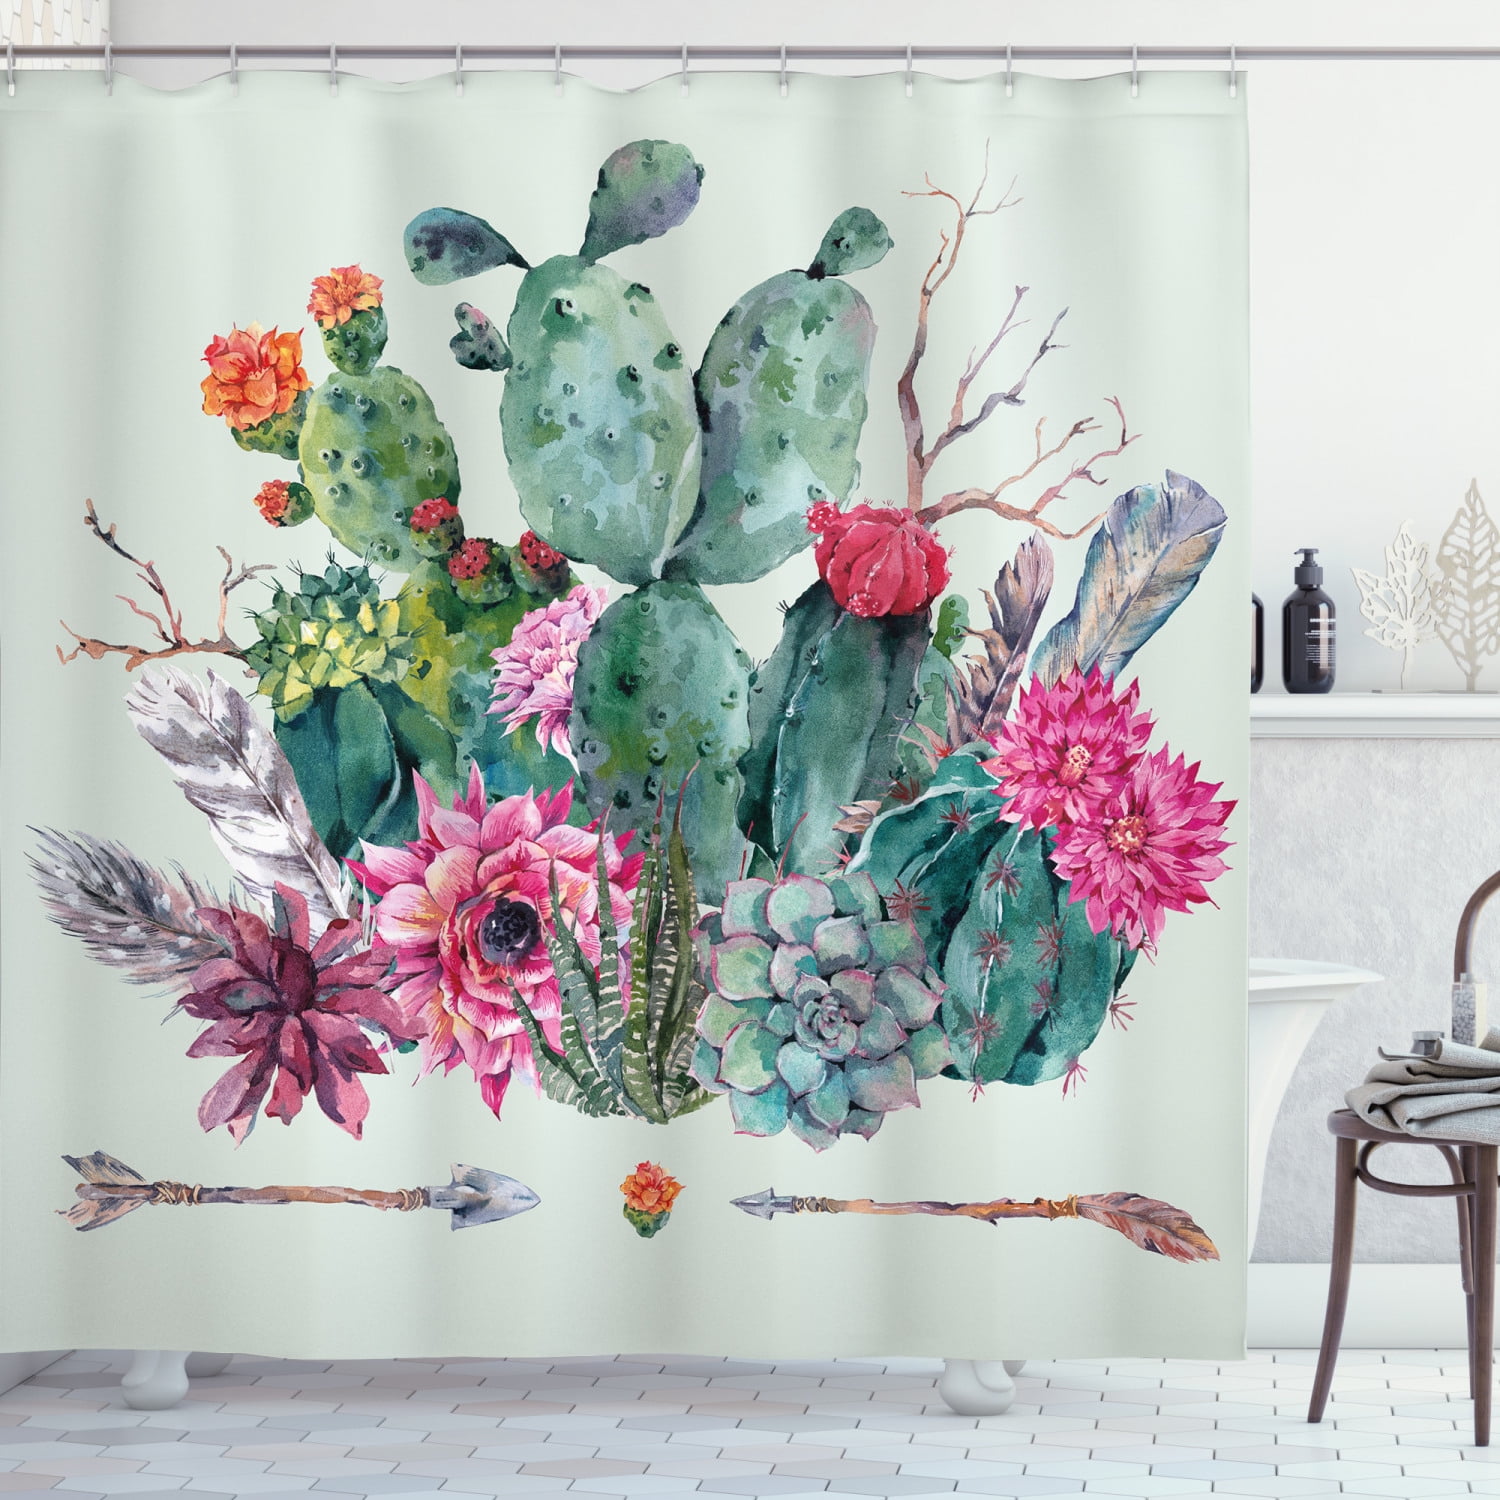 Prickly Cactu Waterproof Bathroom Polyester Shower Curtain Liner Water Resistant 